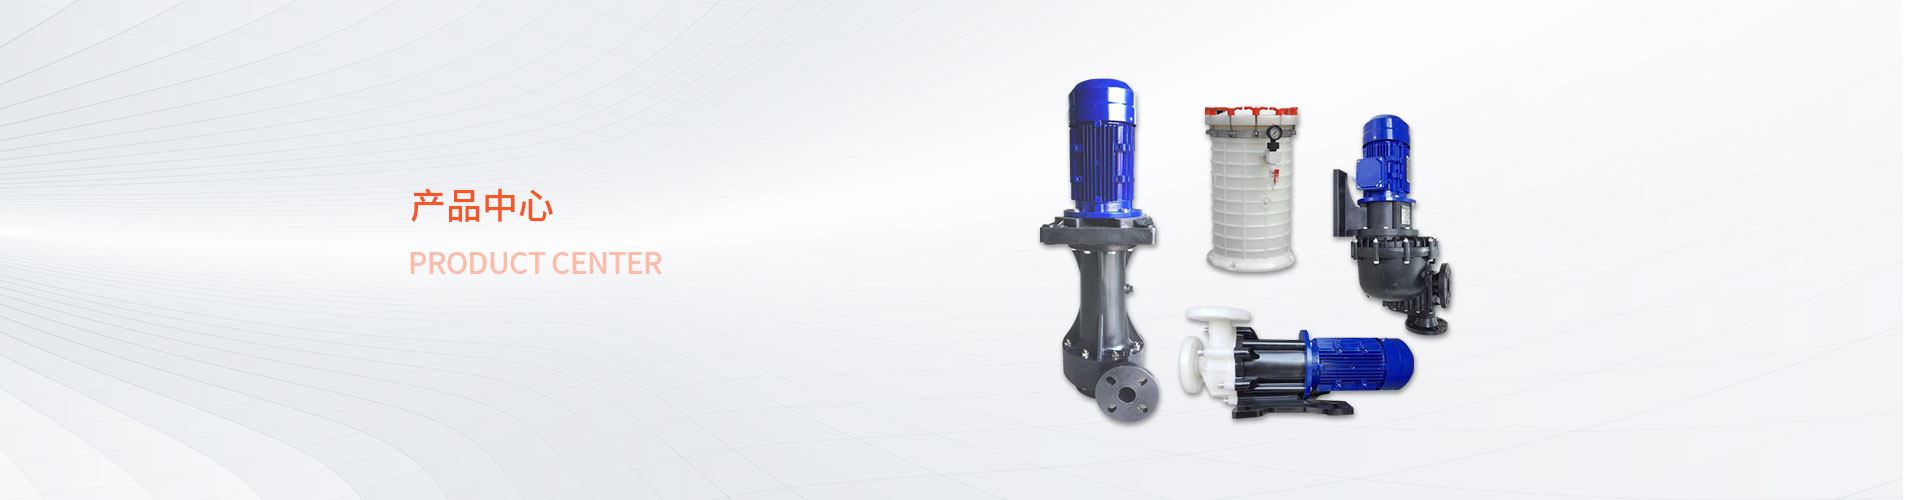 KDV系列直立式耐酸碱泵-深圳市日泰工业设备有限公司